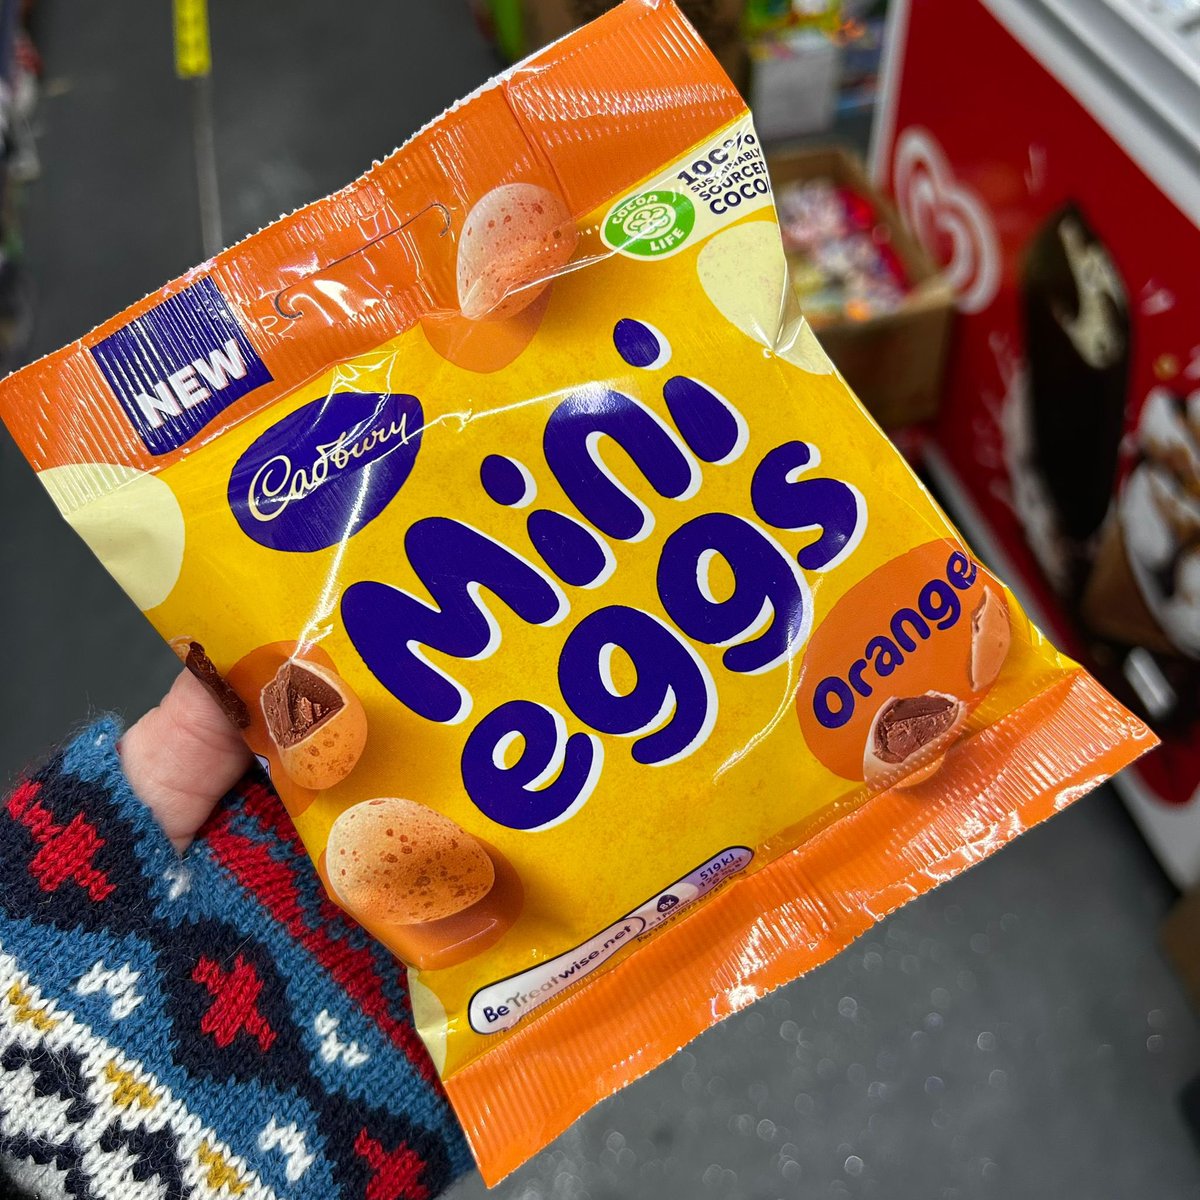 Orange Mini Eggs! 🐣🧡 At the Post Office @cadburyuk #cadbury #minieggs #chocolate #orangechocolate #orange #orangeminieggs #easter #eastereggs #new #wellthisisnew